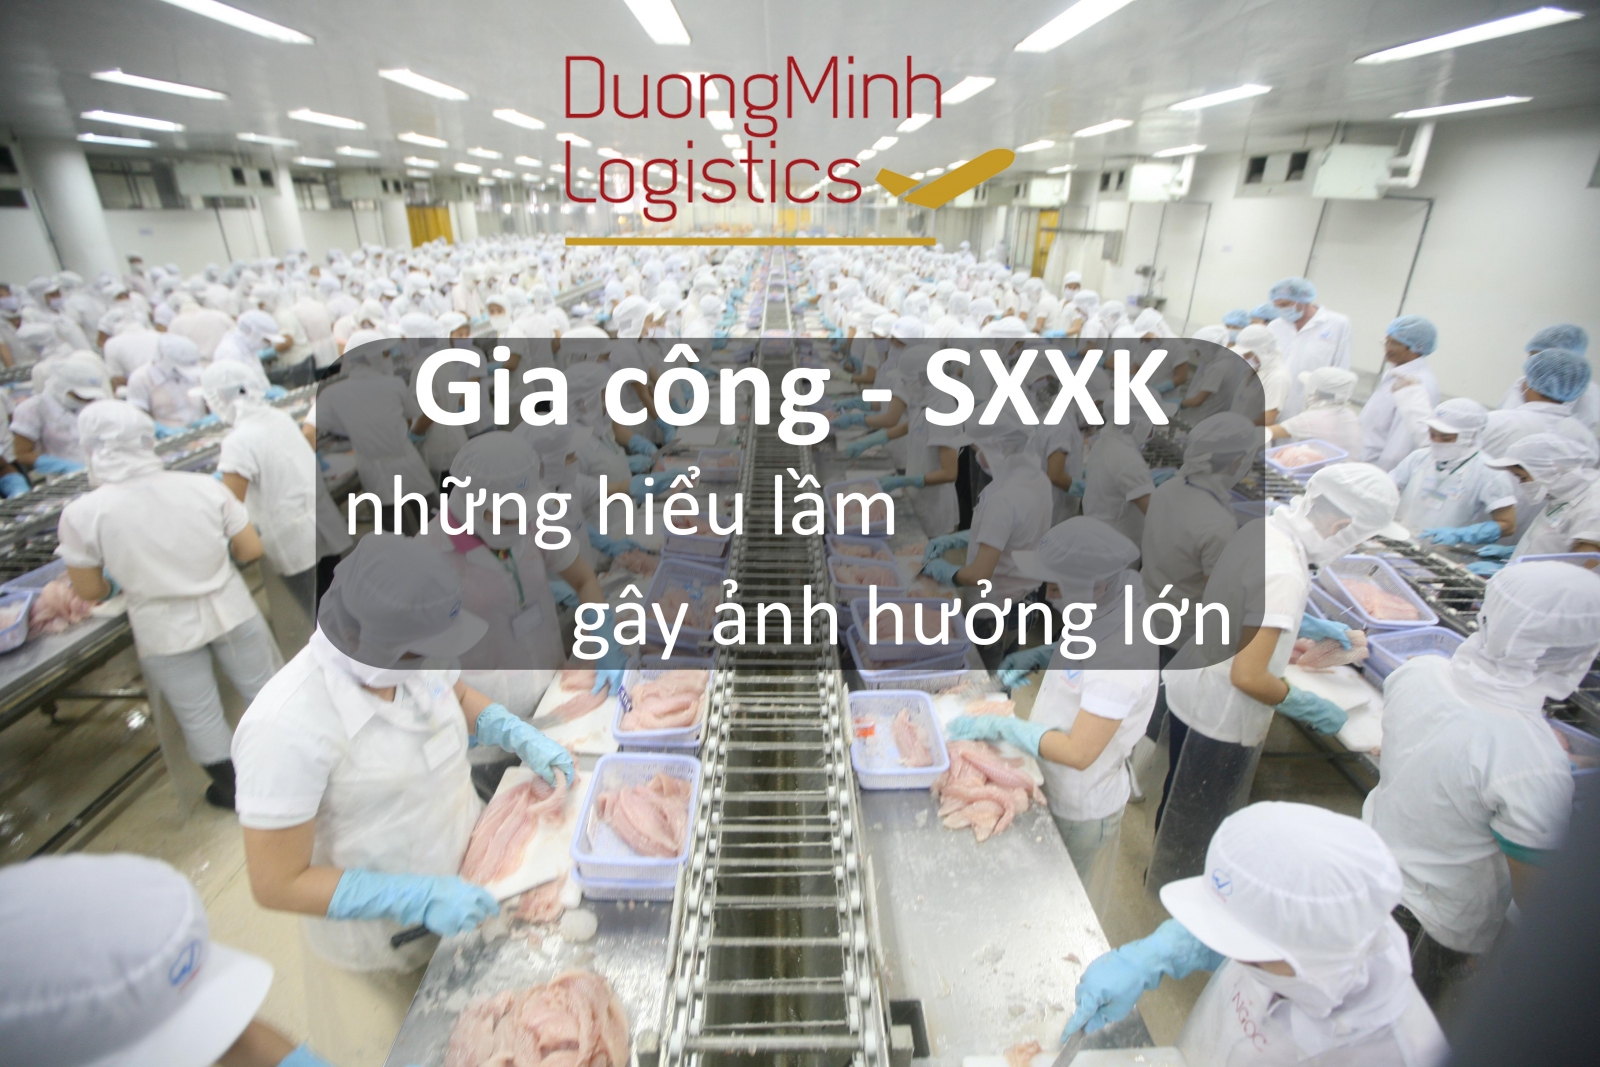 Giải quyết tất cả hồ sơ gia công xuất khẩu bị mất dữ liệu theo thông tư 39 - Dương Minh logistics